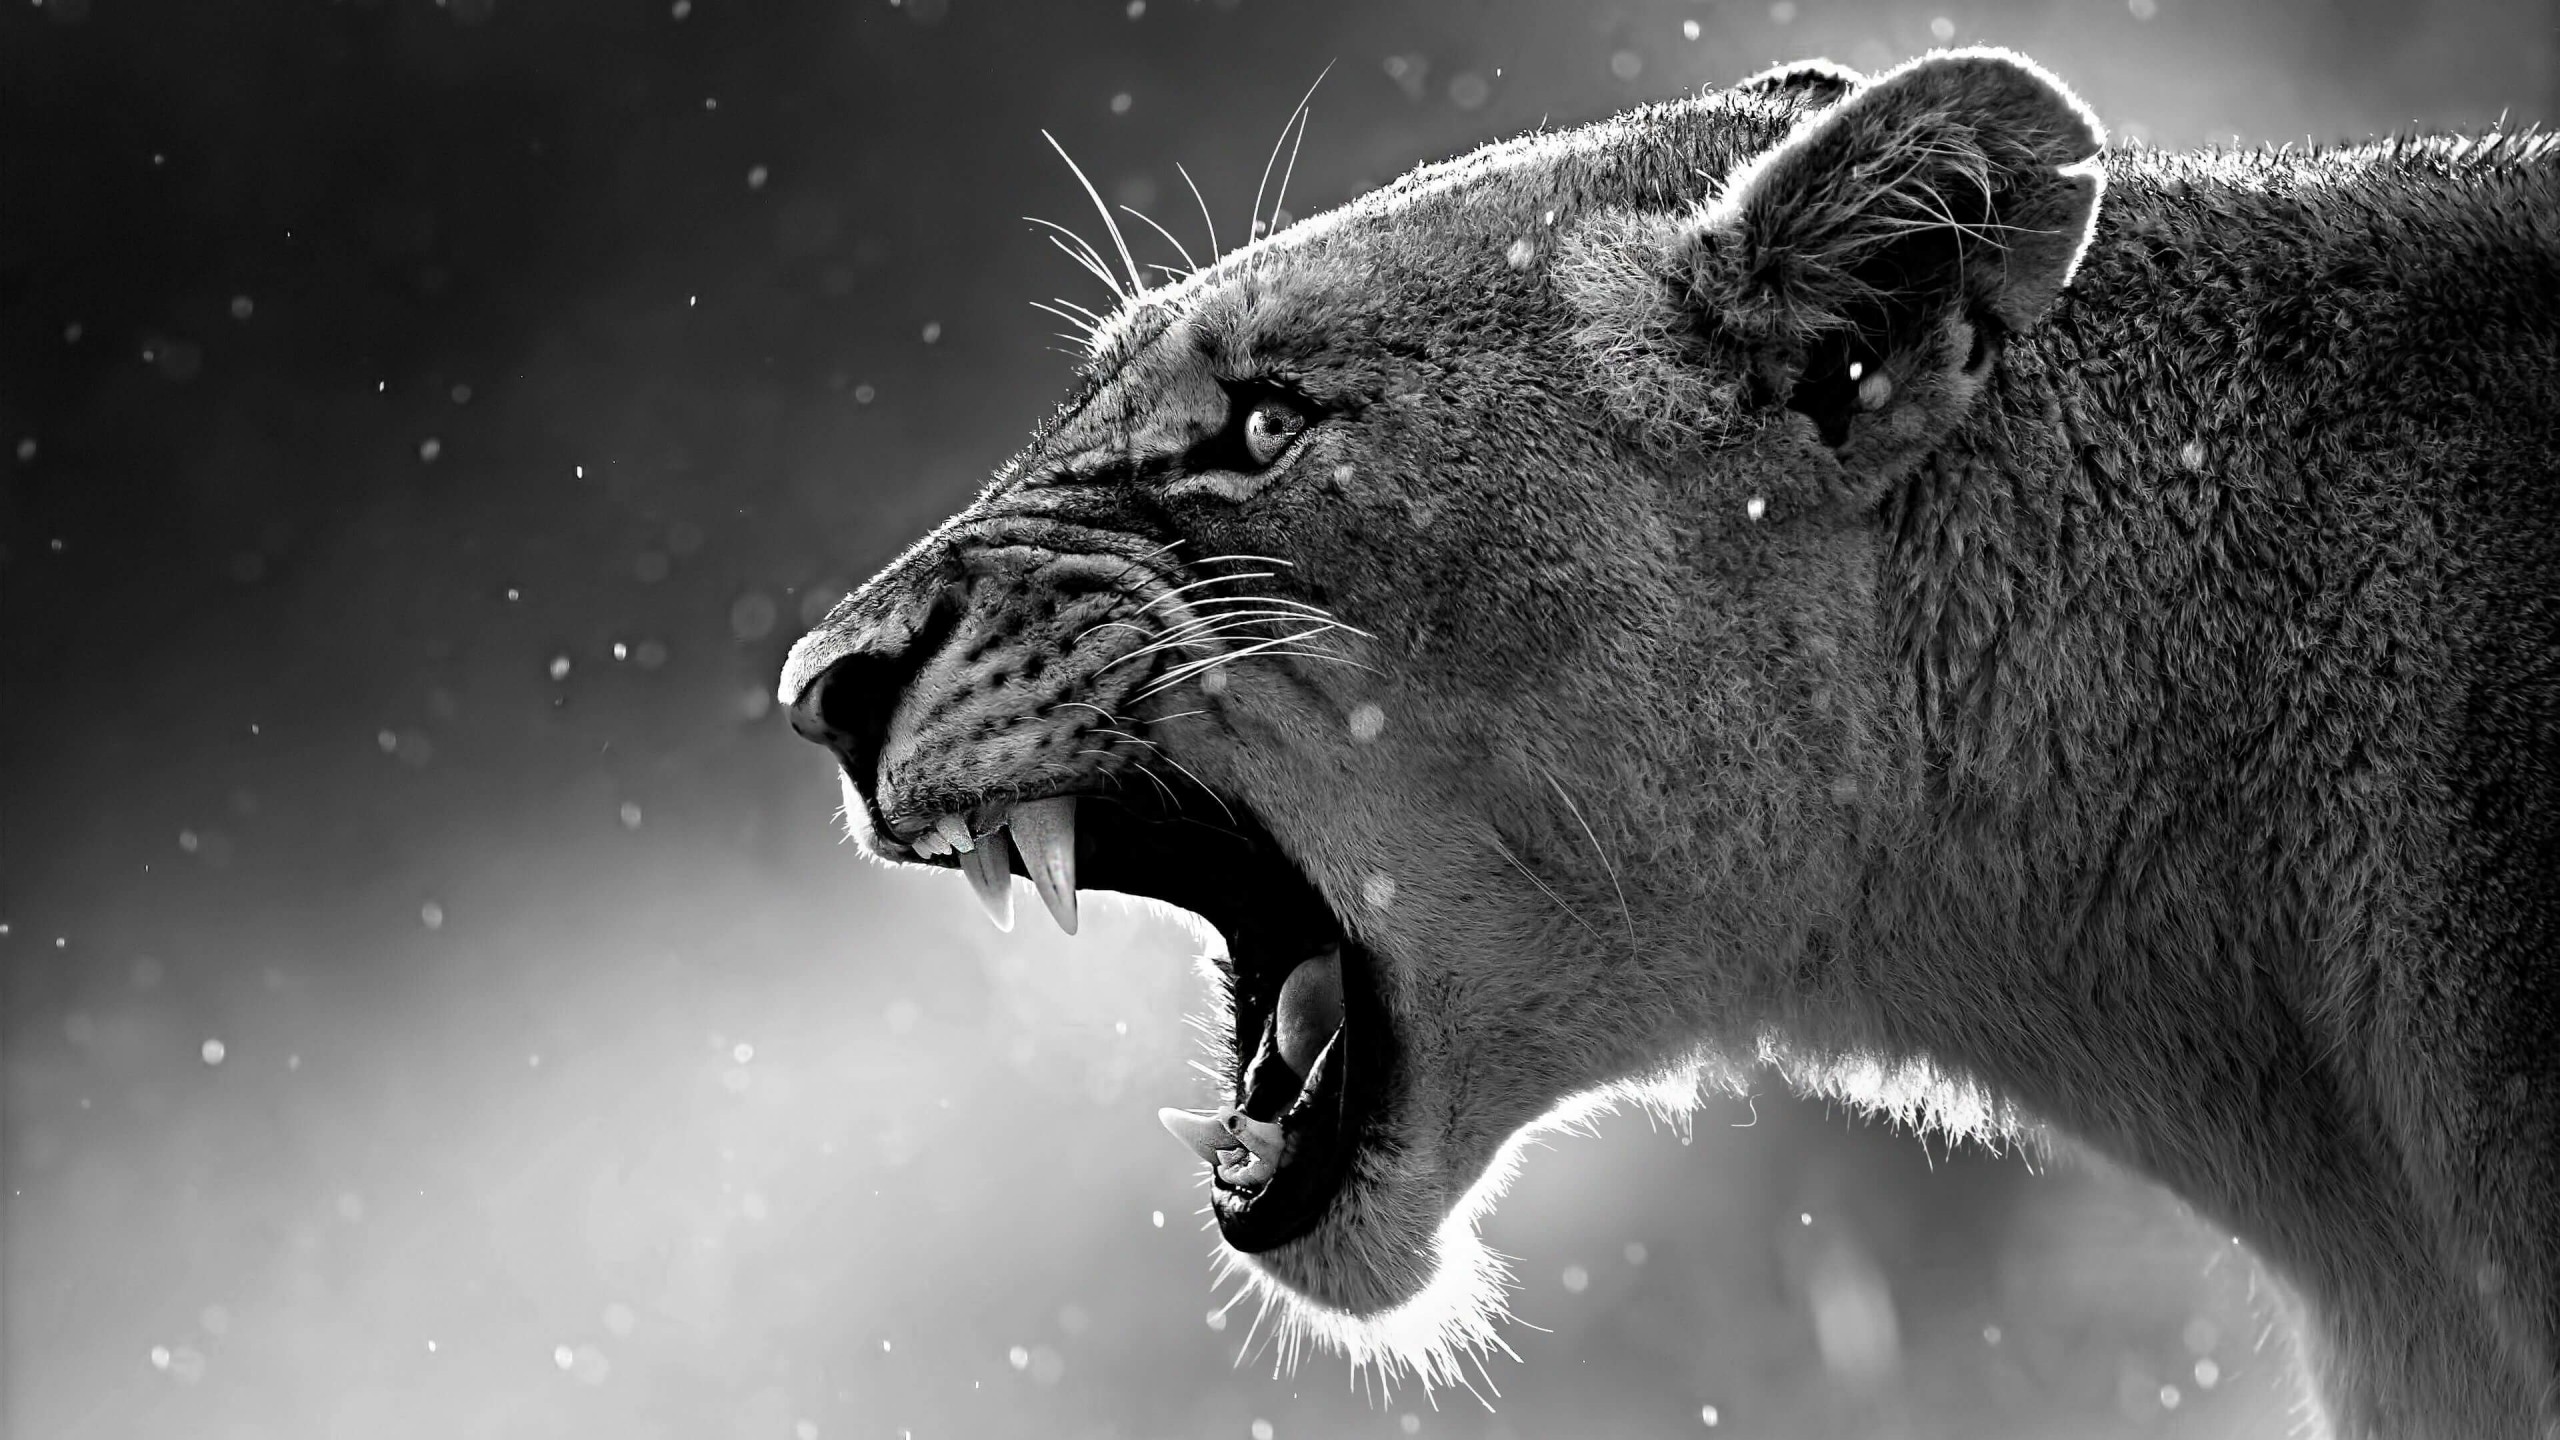 Lioness in Black & White Wallpaper for Social Media YouTube Channel Art